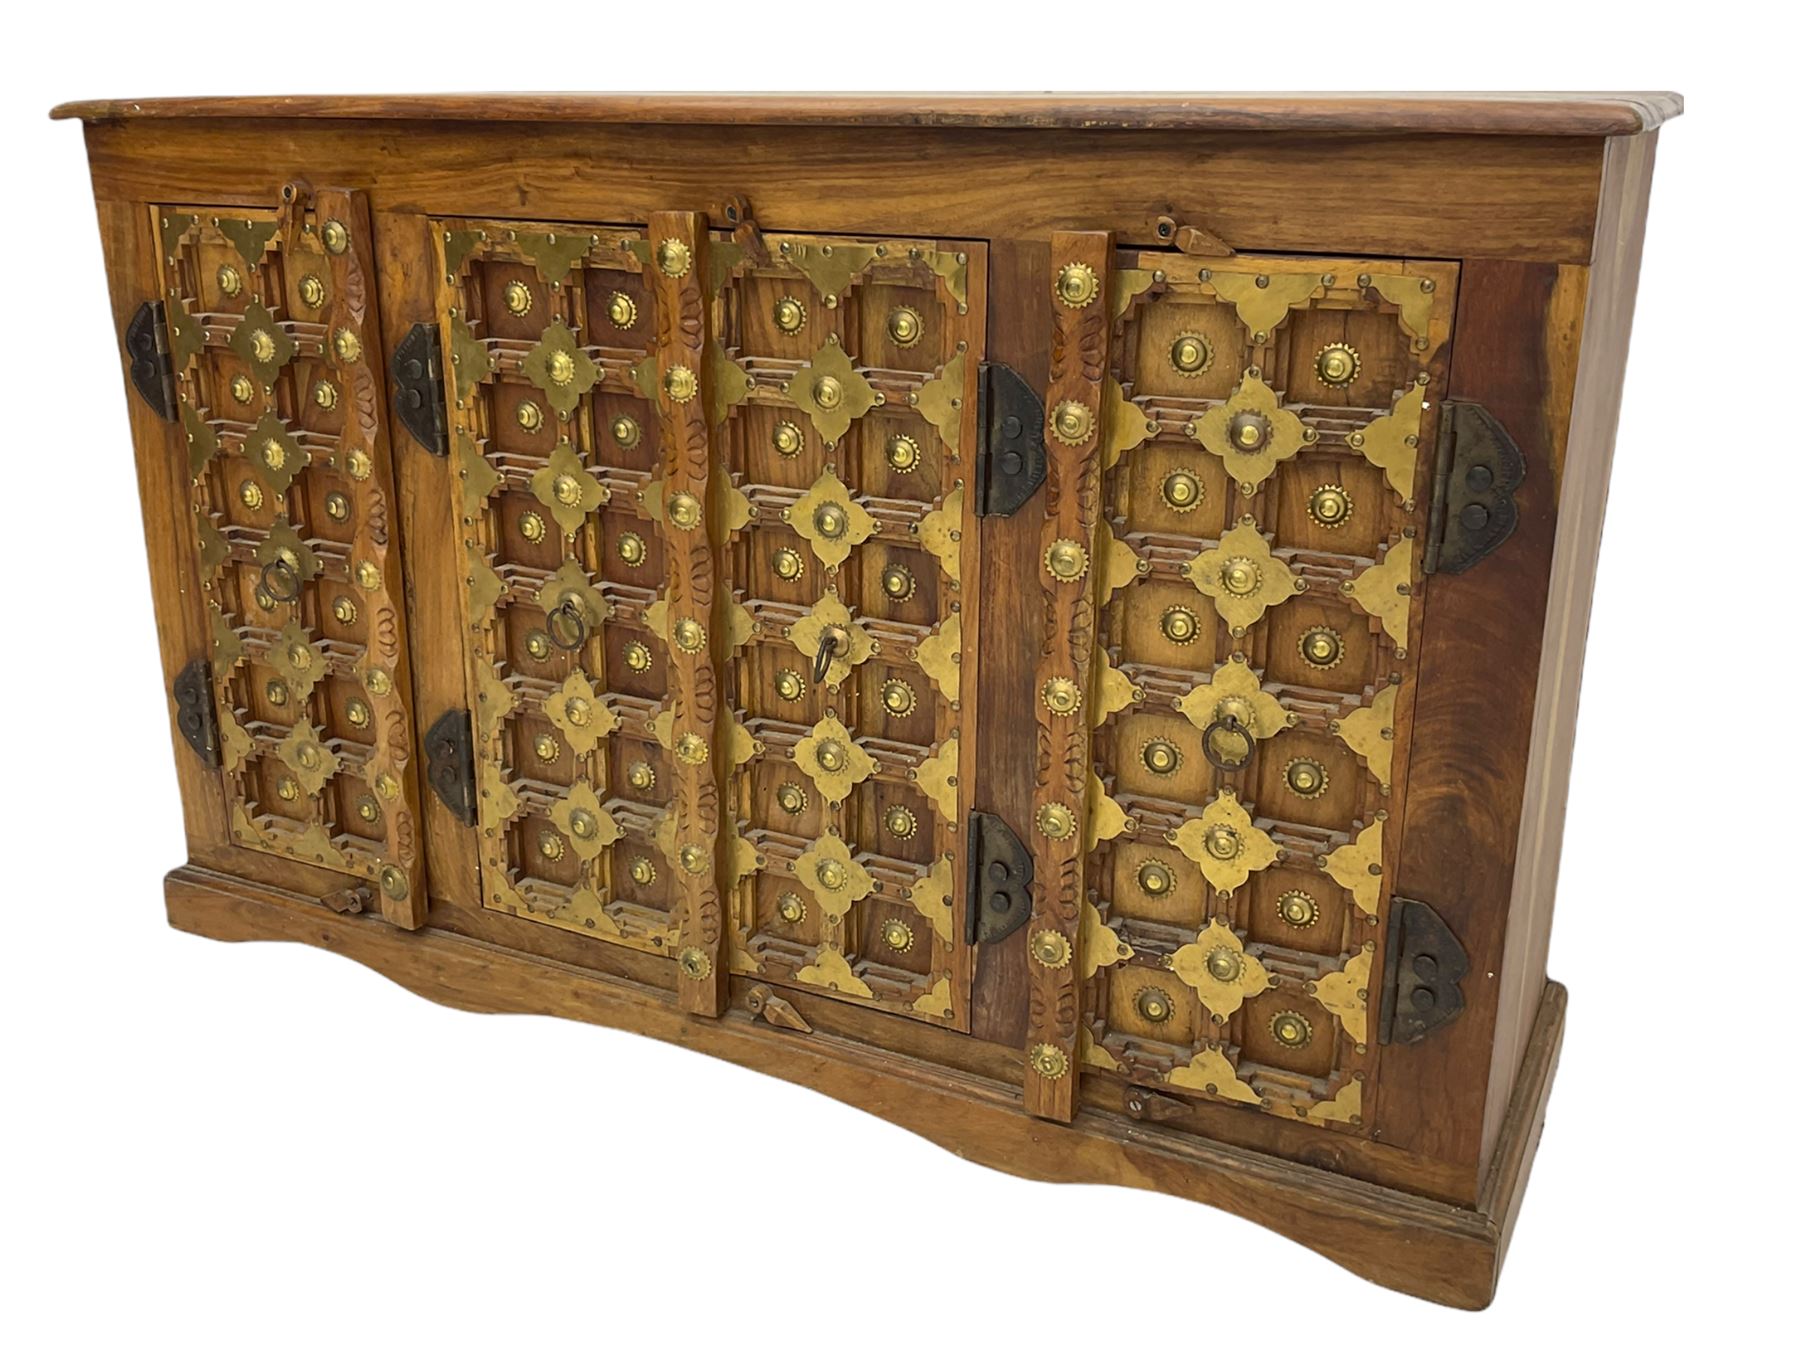 Eastern hardwood side cabinet - Image 4 of 8